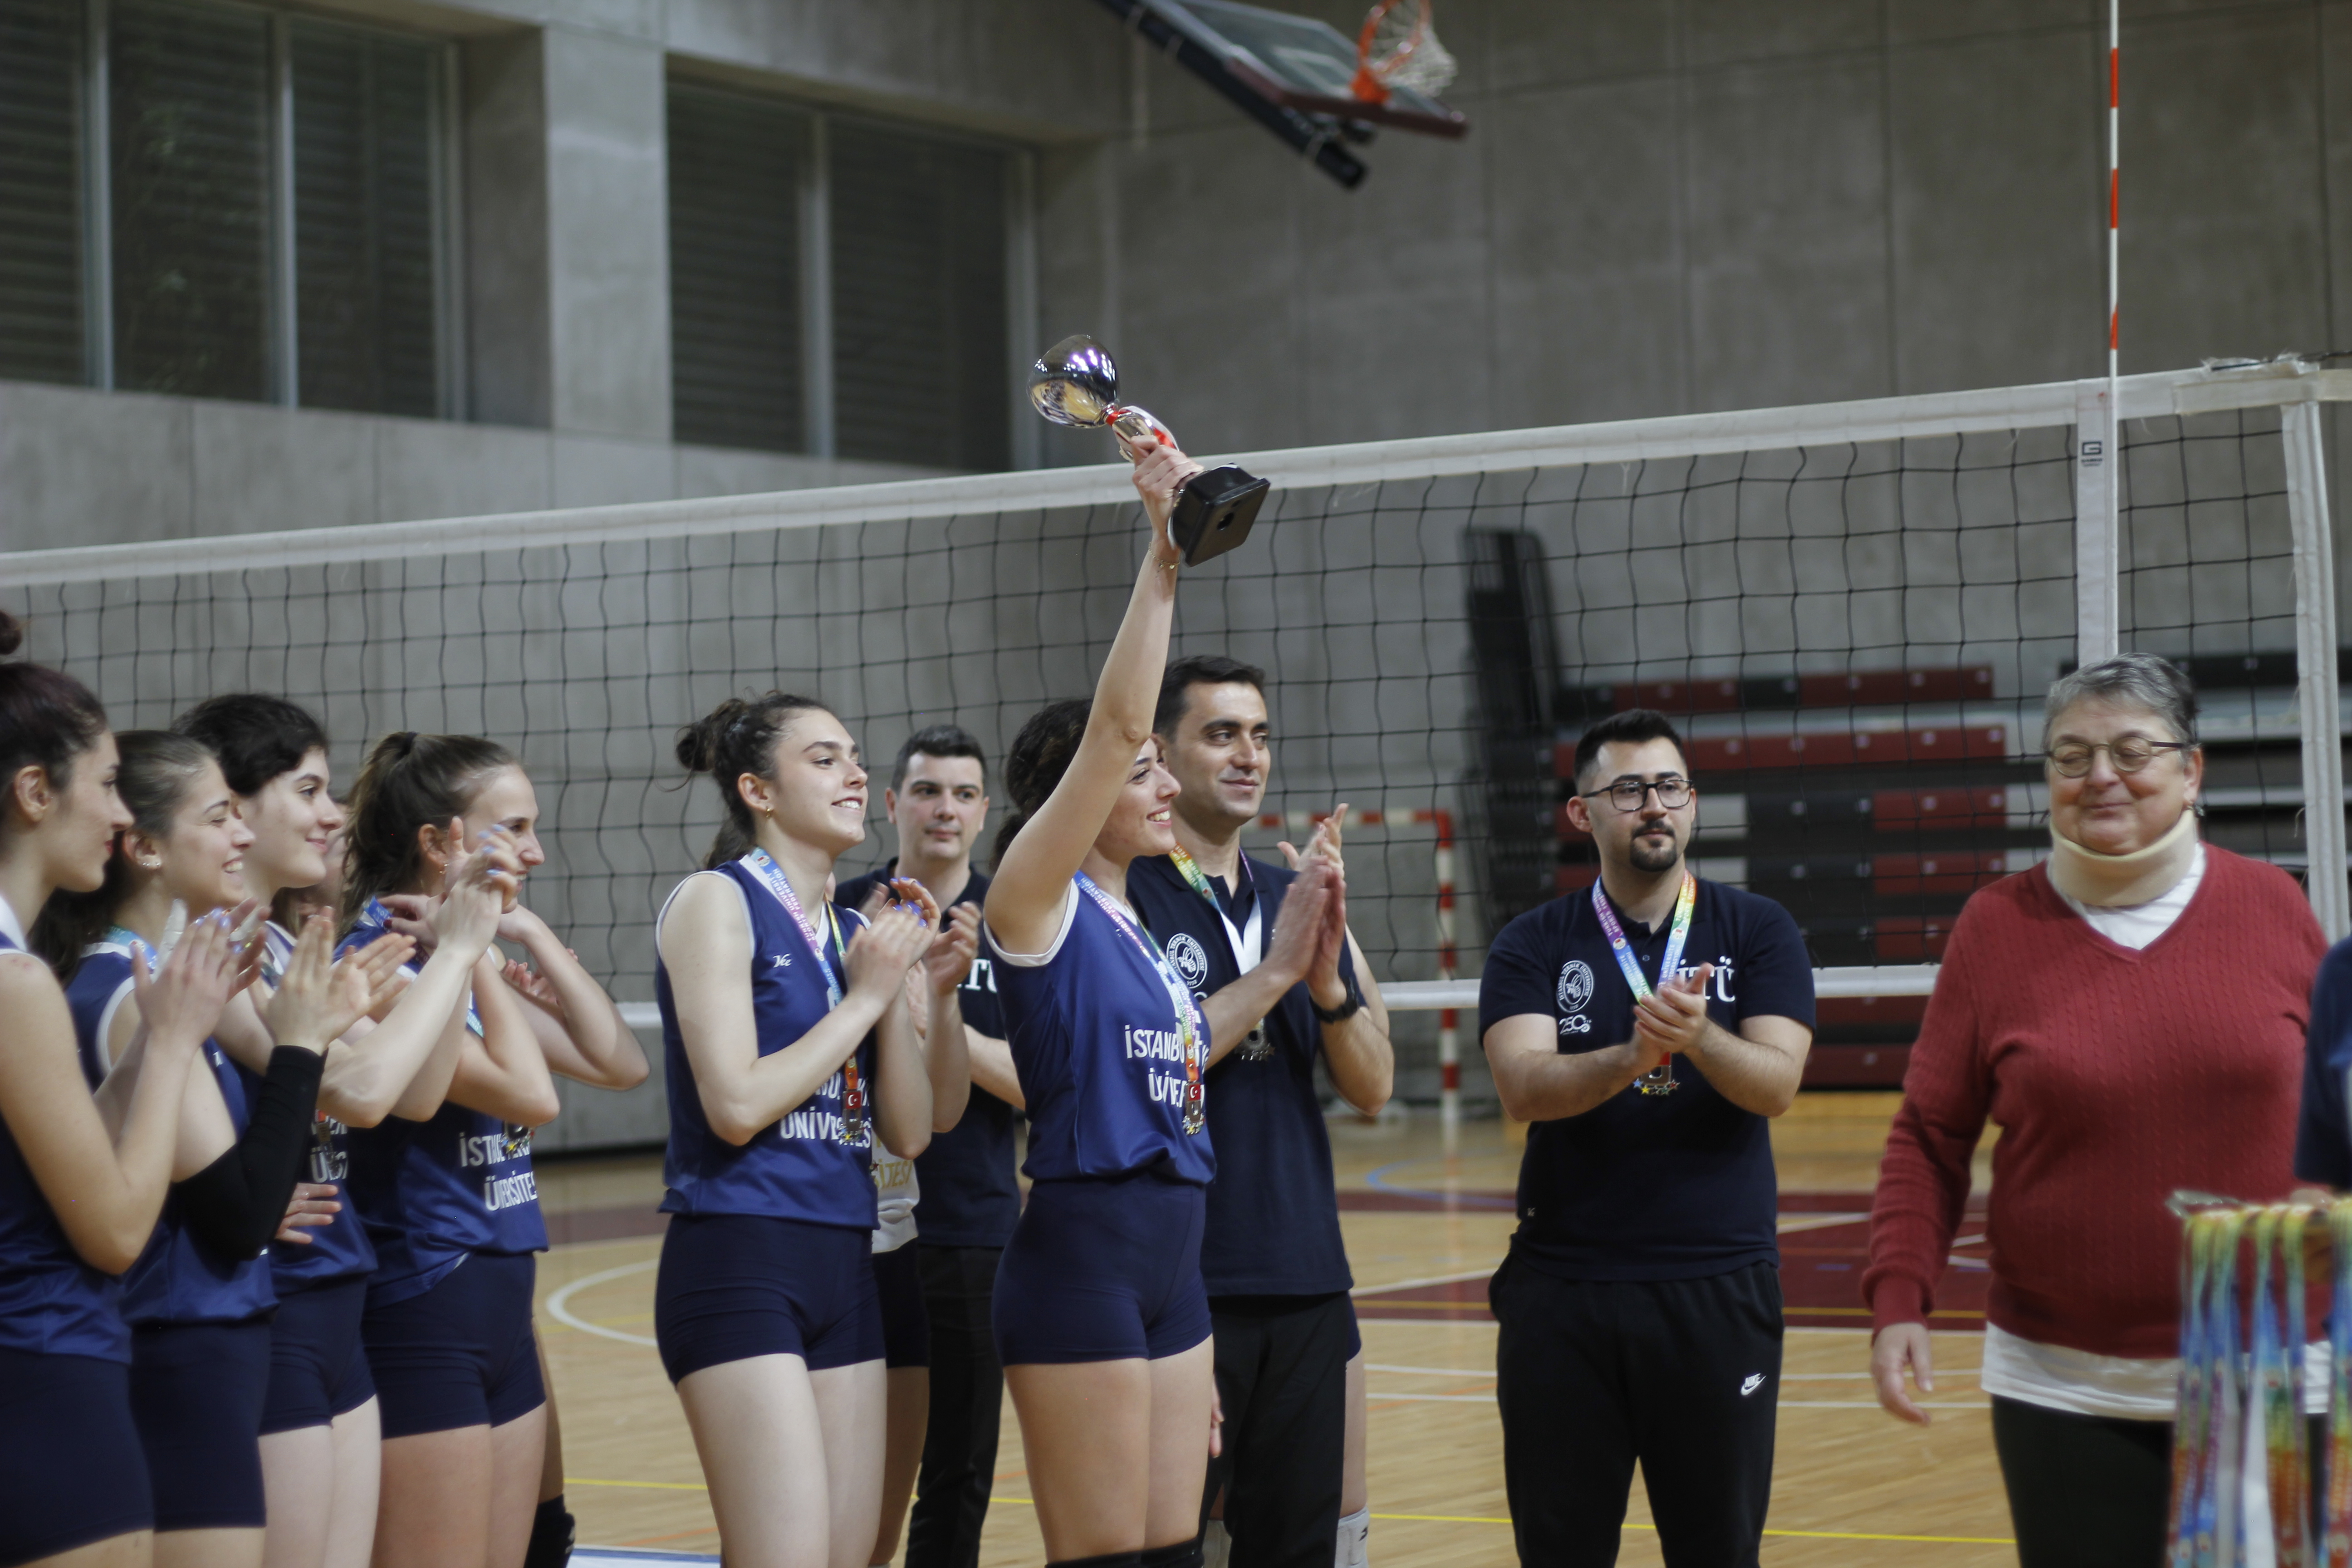 İTÜ Kadın volybol takımı oyuncularımız kazandıkları kupayı kaldırarak coşkuyla başarılarını kutluyor